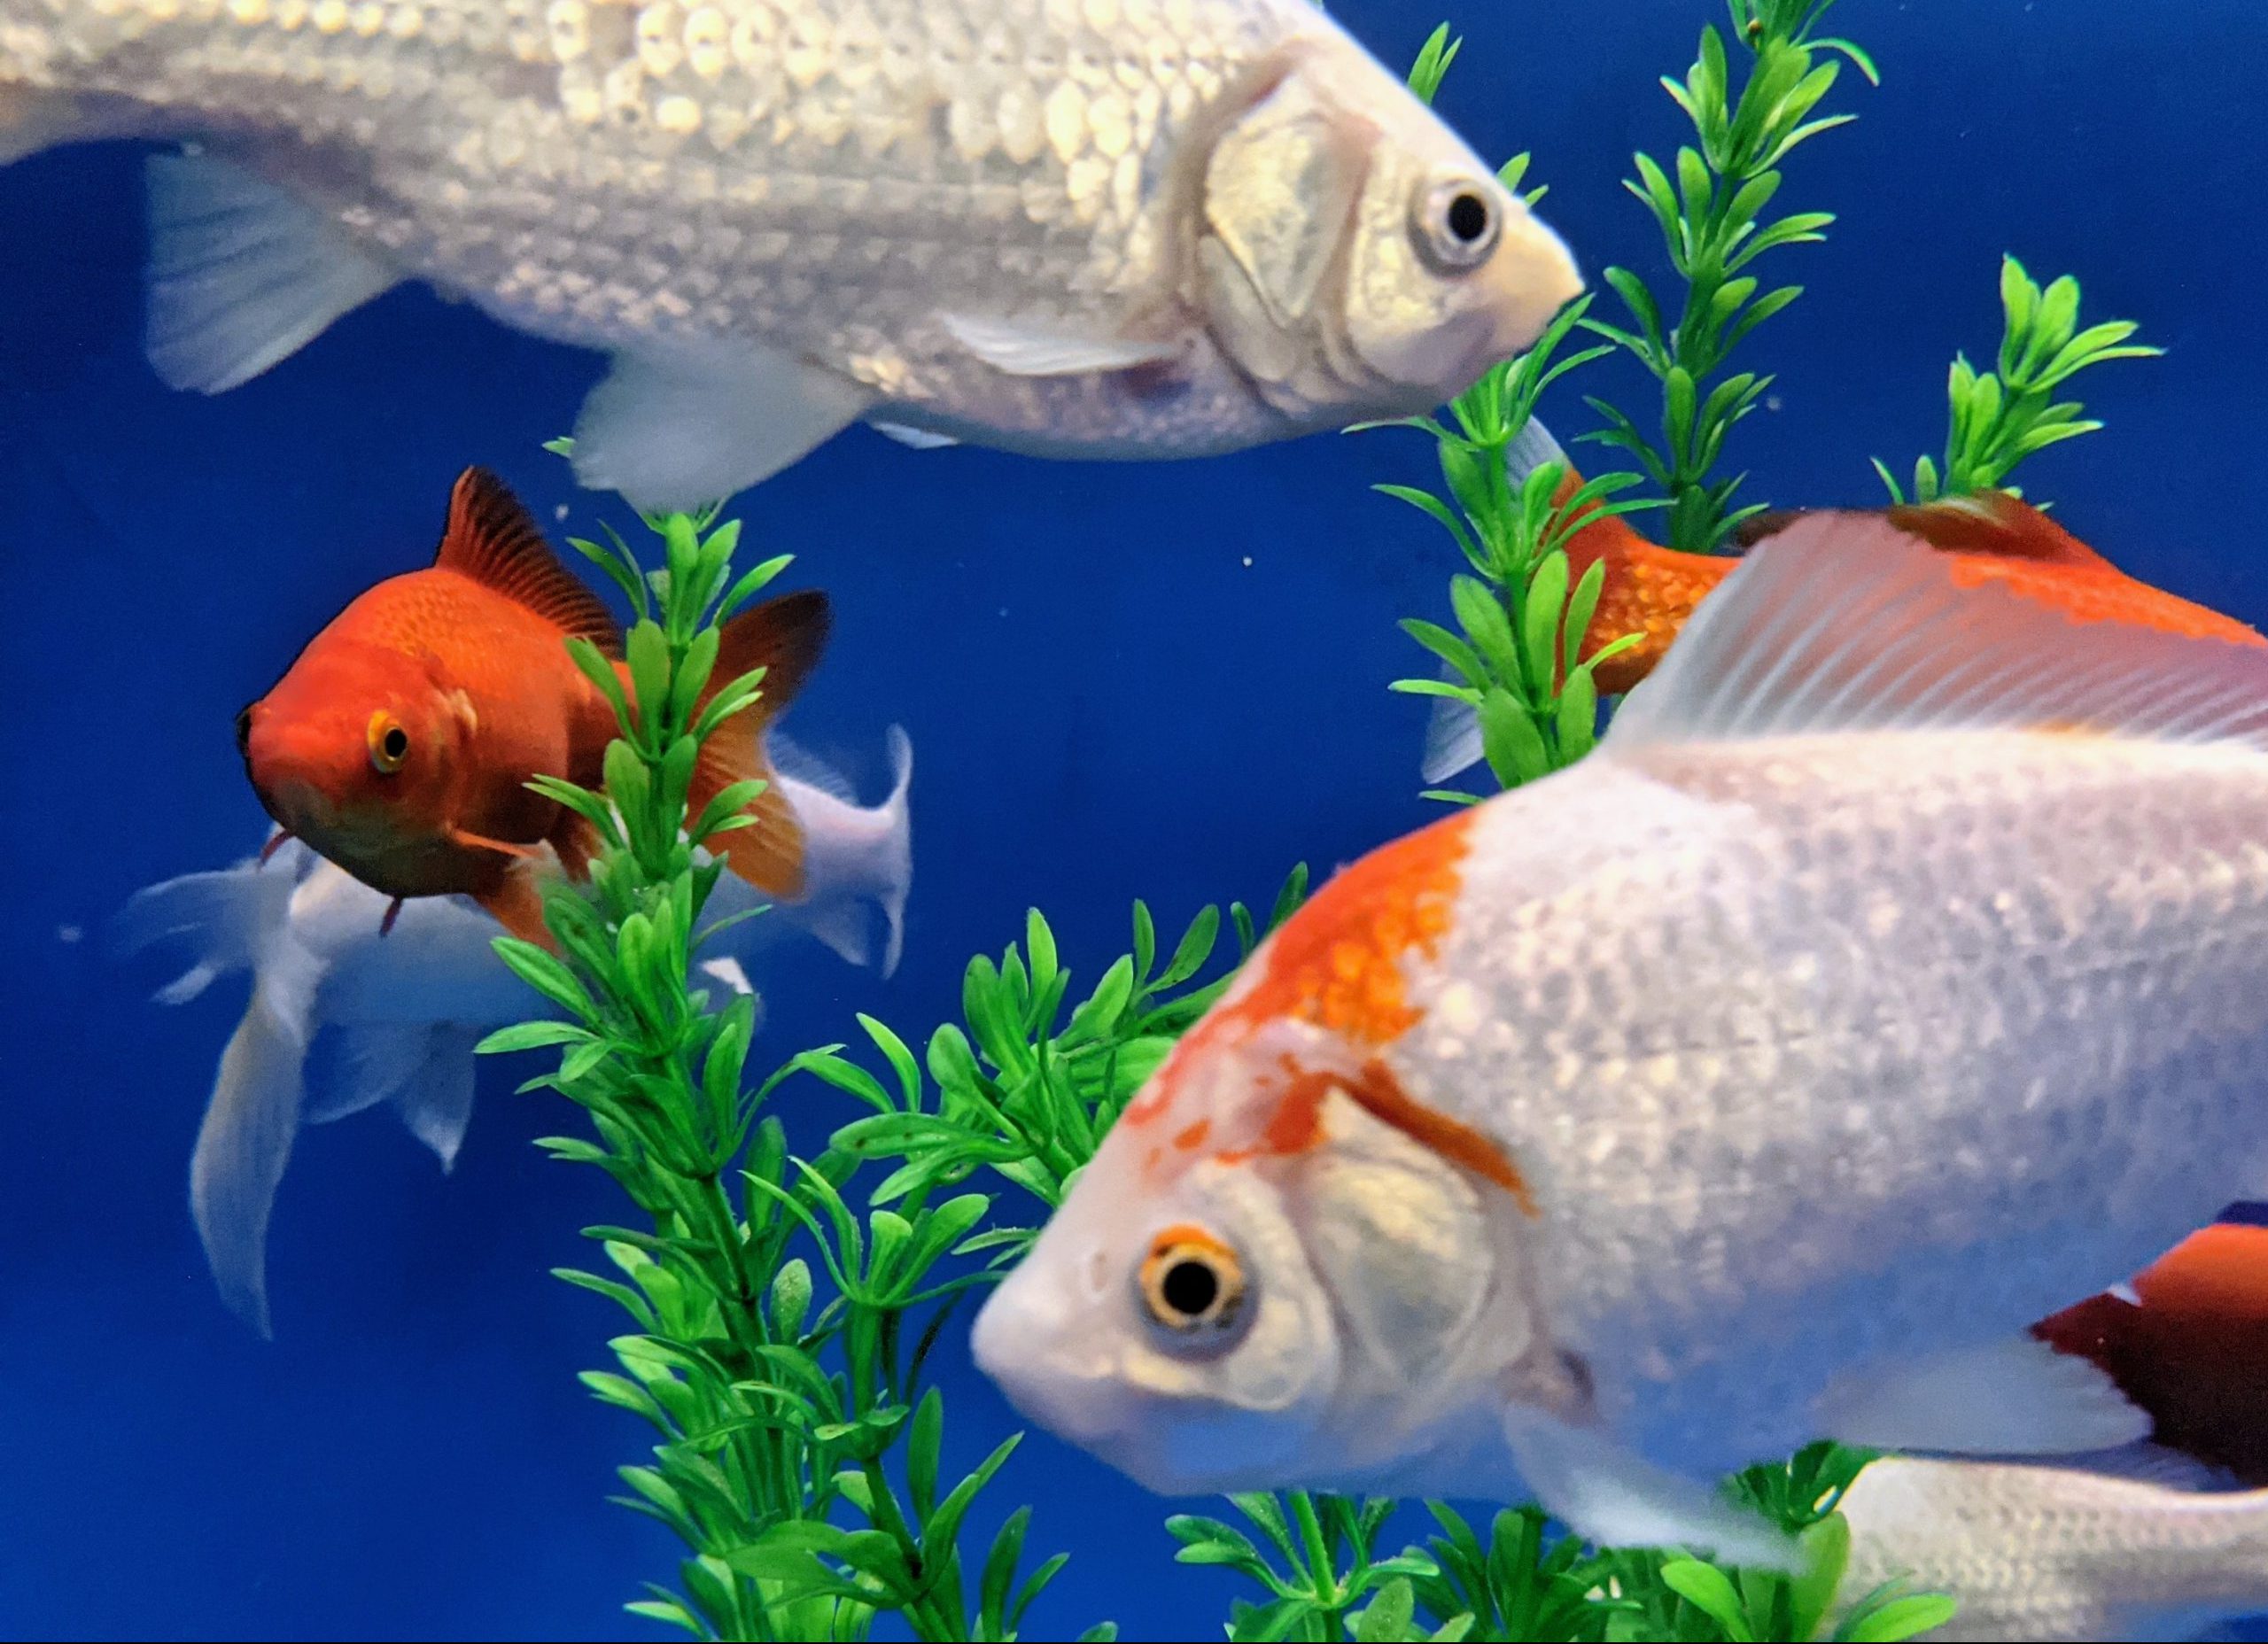 Decorative image of goldfish